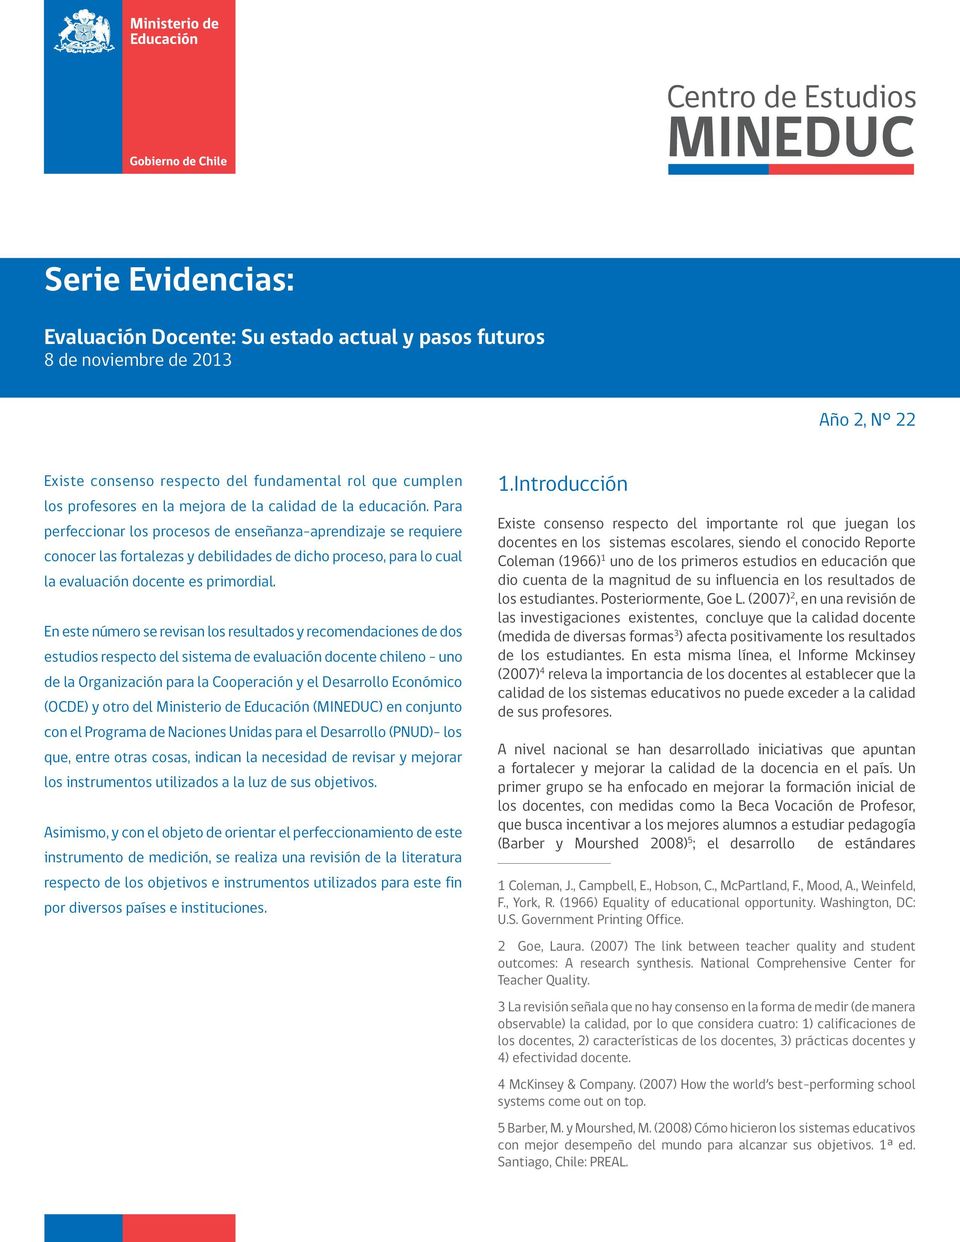 En este número se revisan los resultados y recomendaciones de dos estudios respecto del sistema de evaluación docente chileno - uno de la Organización para la Cooperación y el Desarrollo Económico